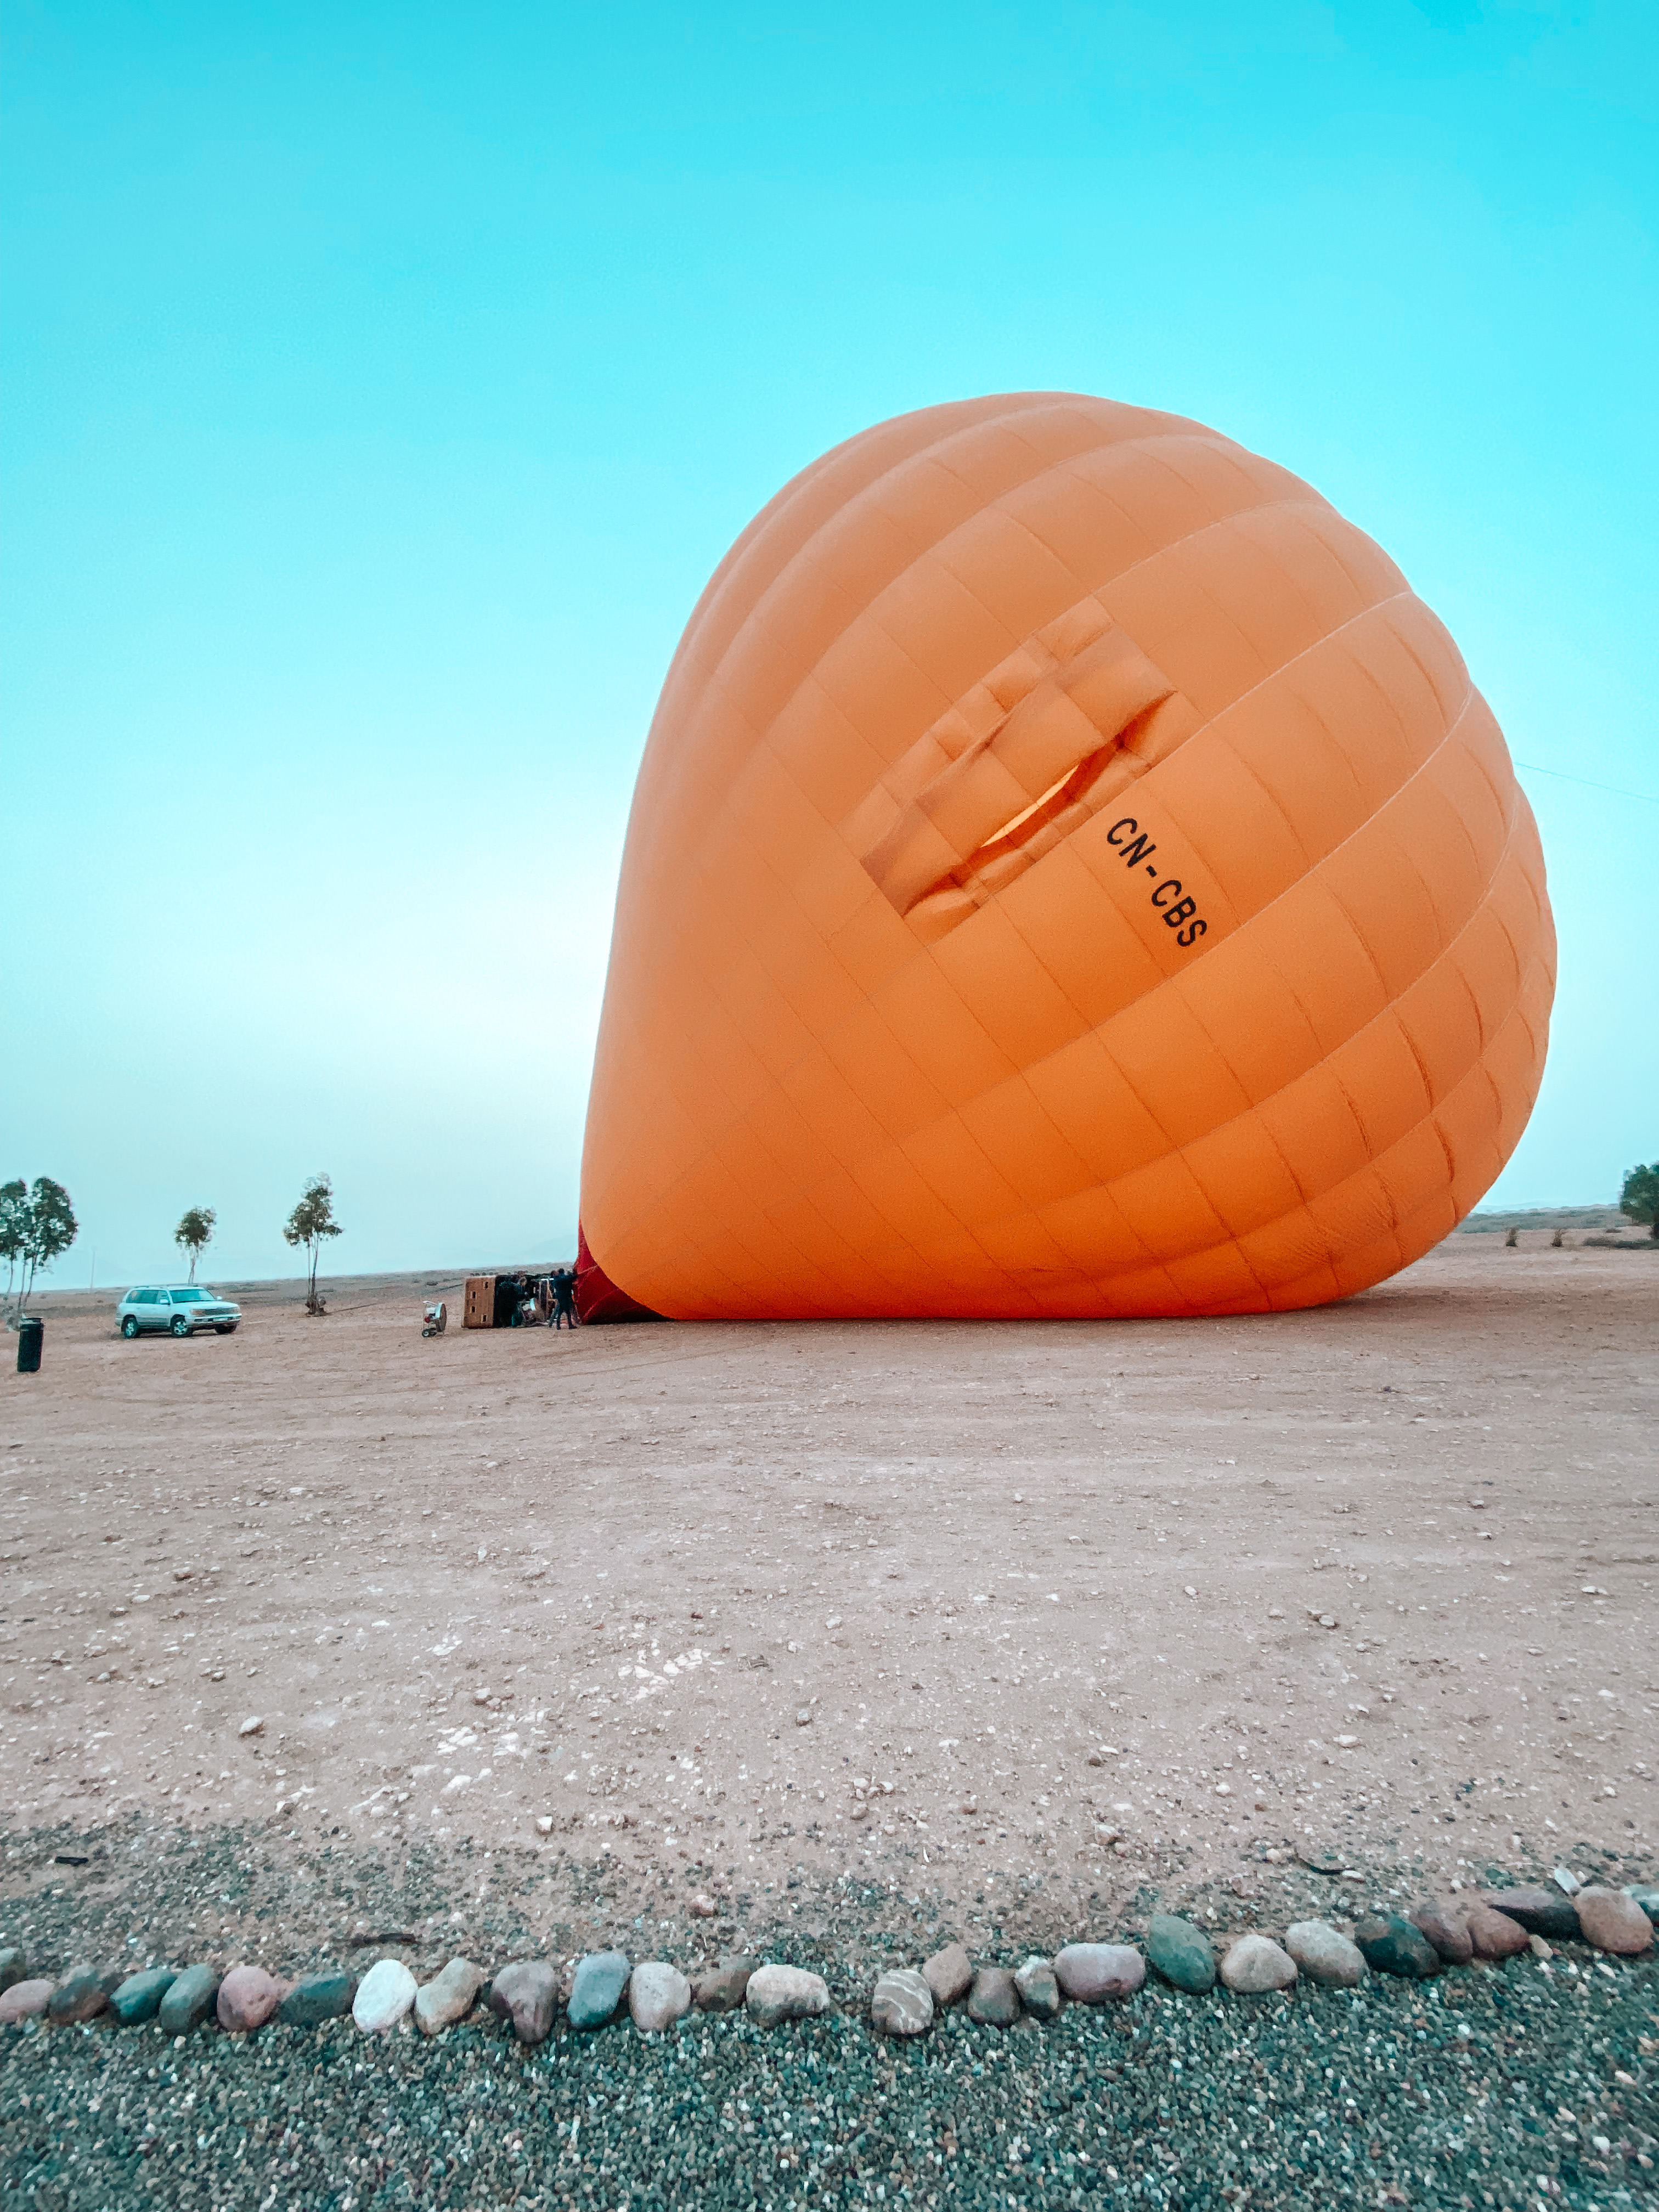 ballon de montgolfiere au sol qui se prépare à voler